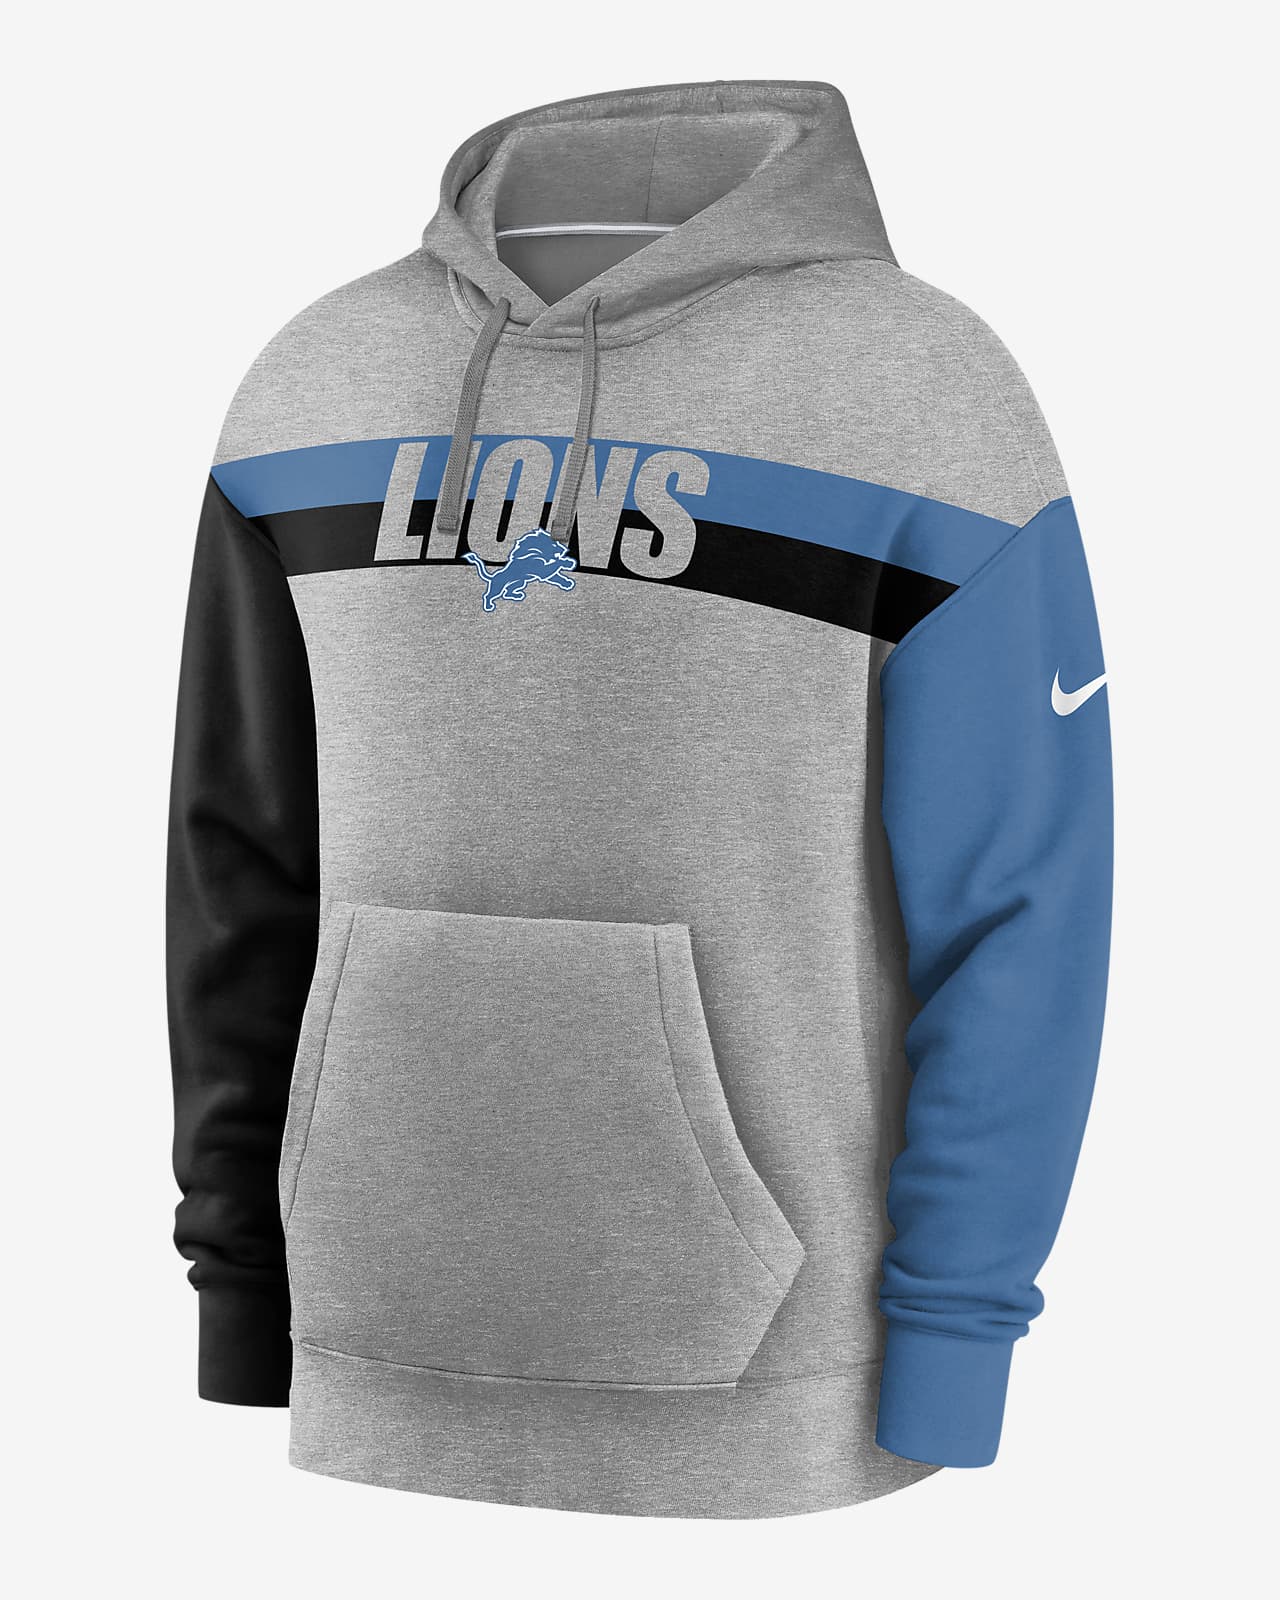 mens lions hoodie